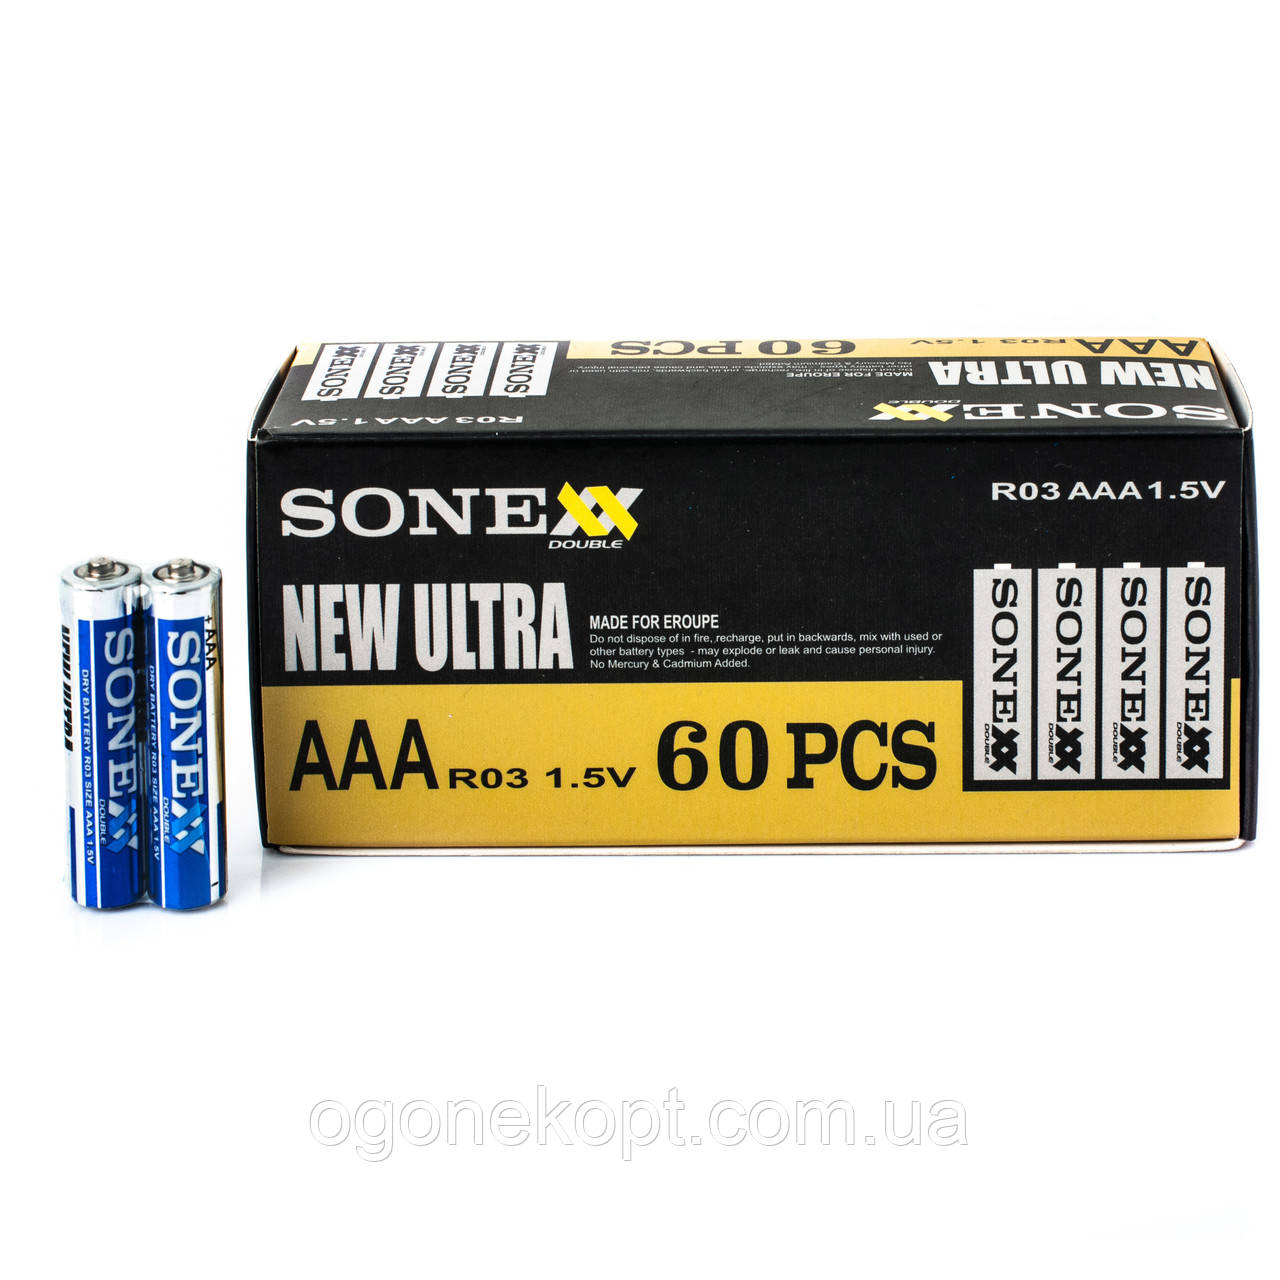 Батарейки SONEXX ААА R03 1.5V Heavy Duty